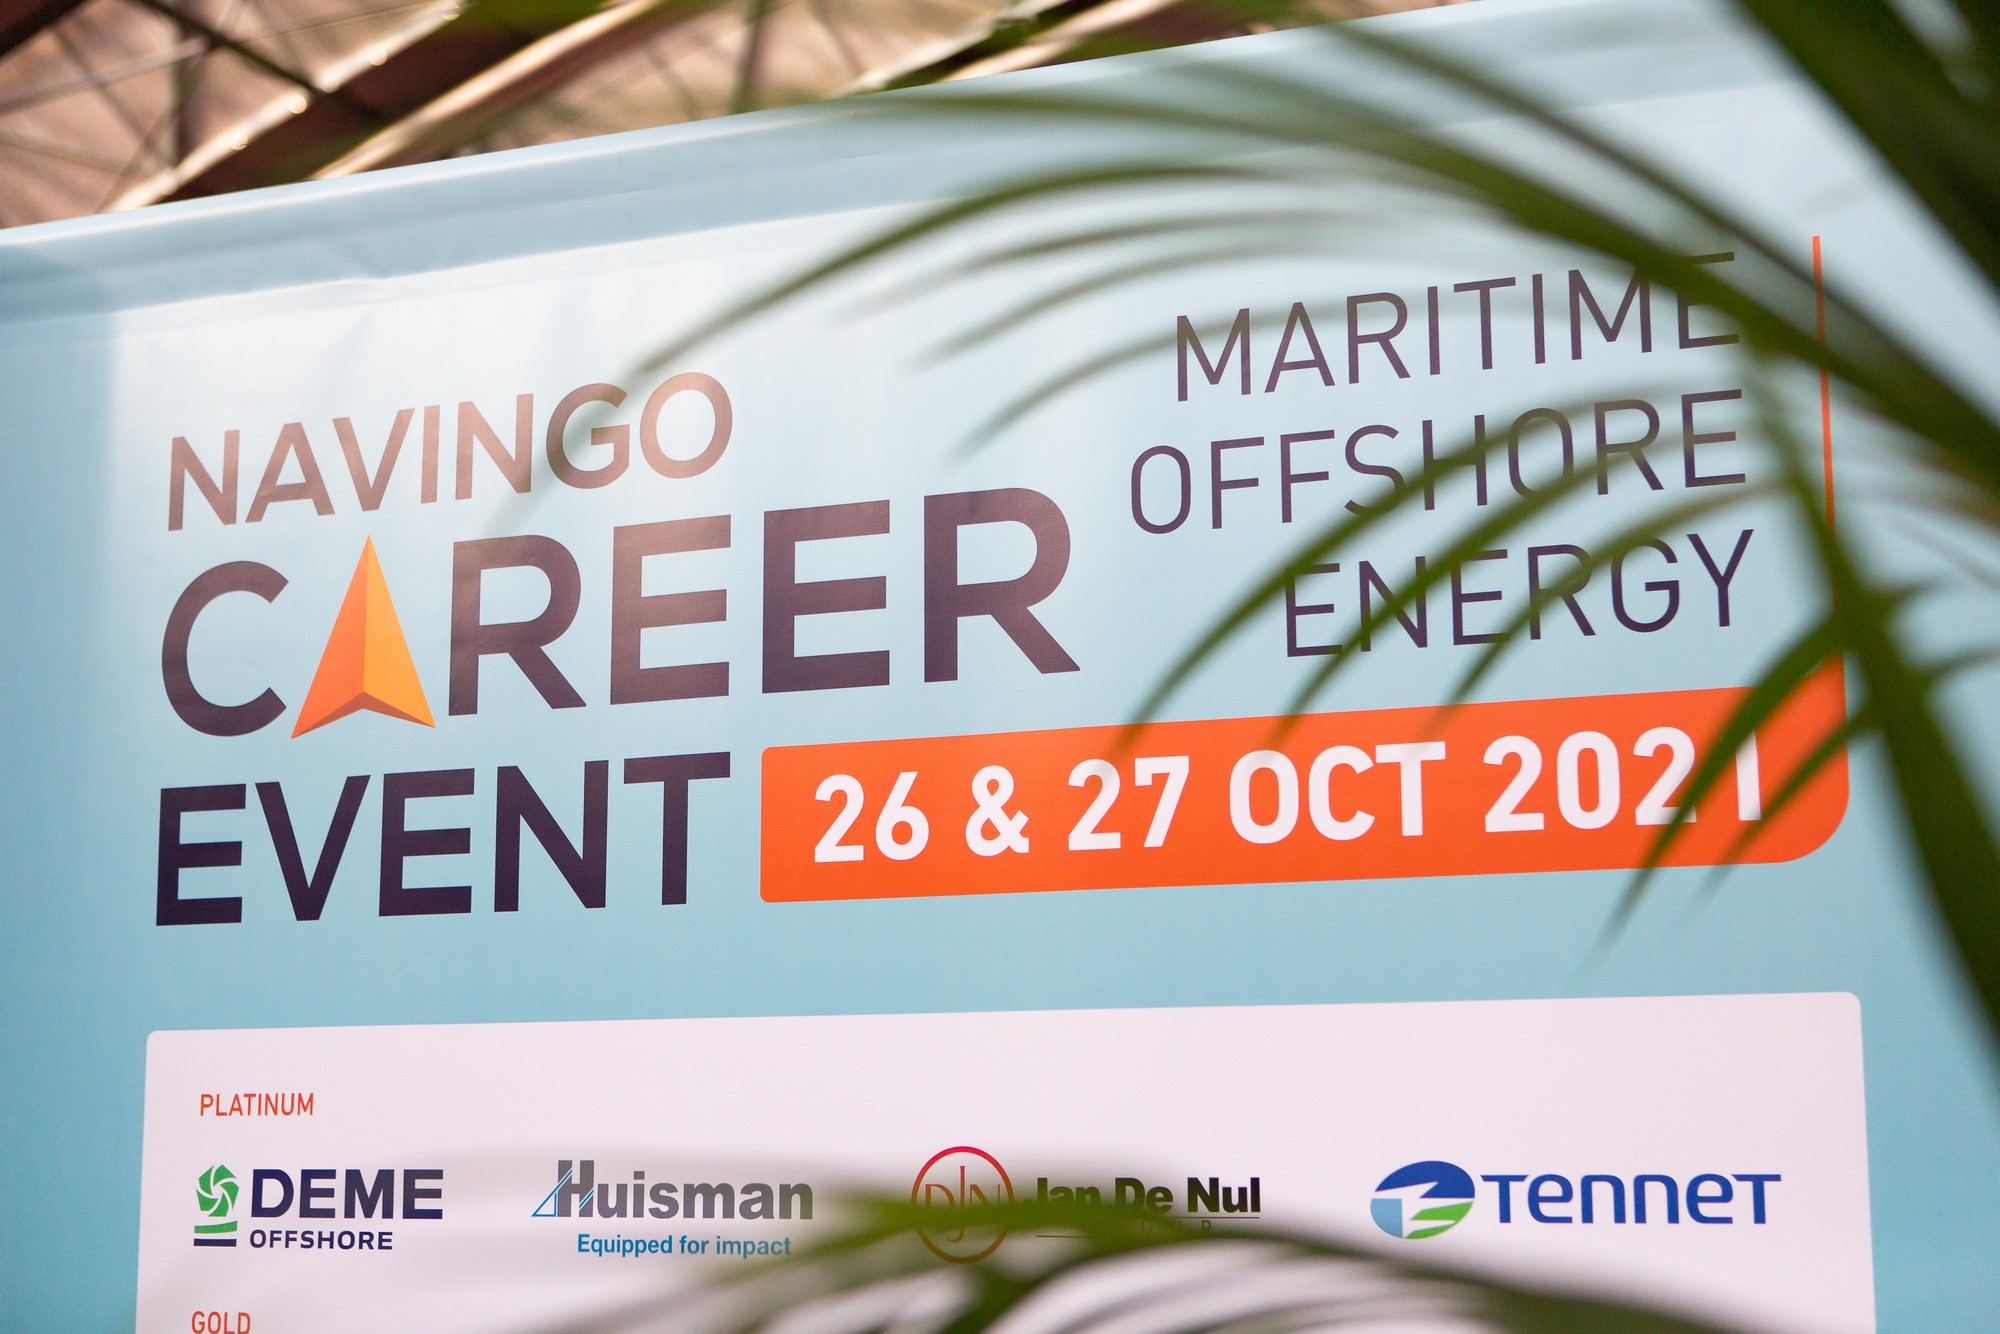 Navingo Career Event benadrukt belang personeel in energietransitie